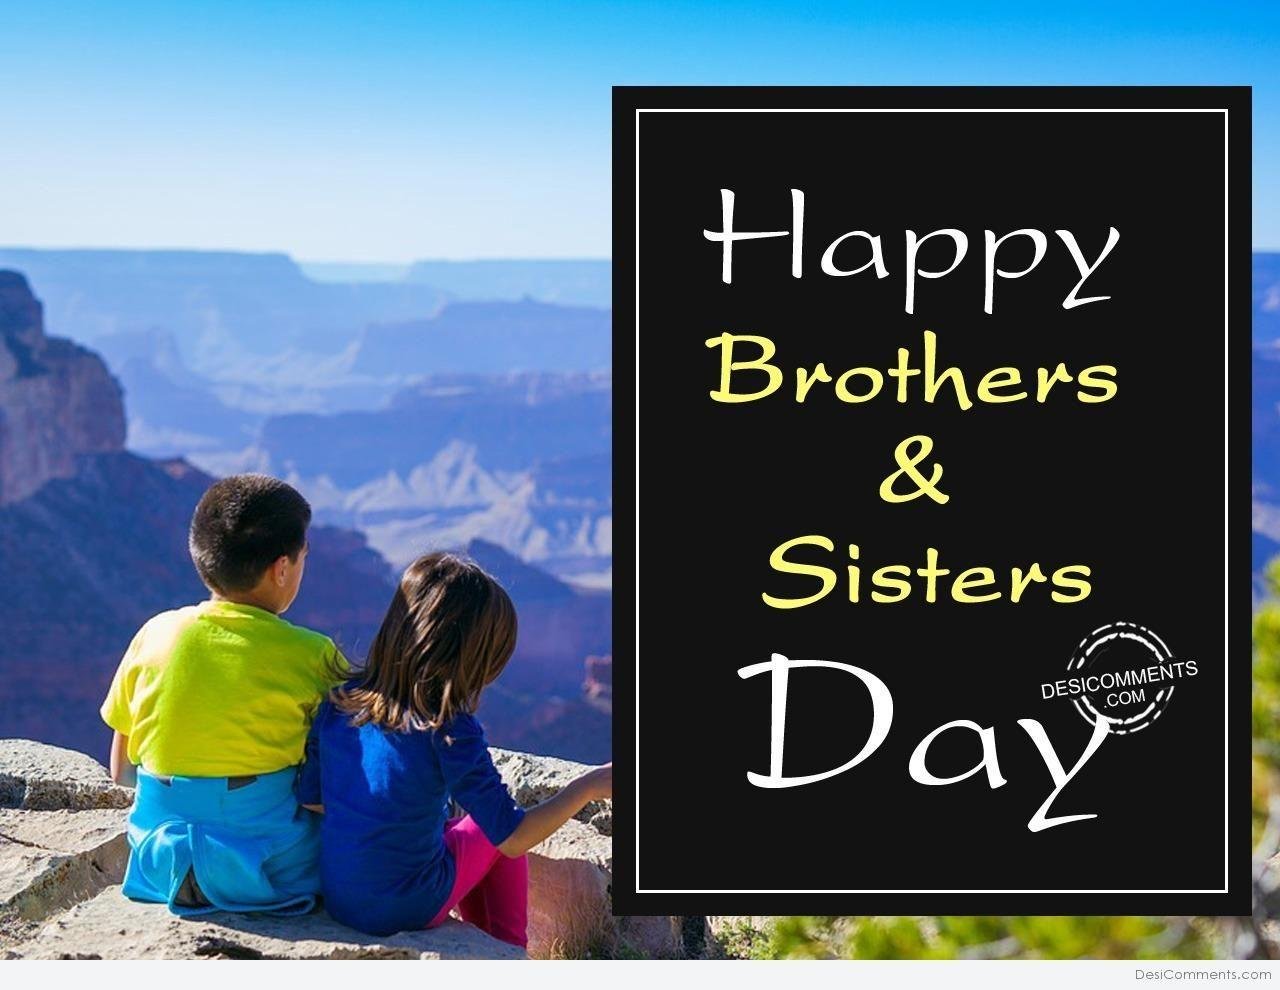 Brother watching sister. День братьев и сестер. Европейский день братьев и сестер. С праздником братьев и сестер. День братьев.